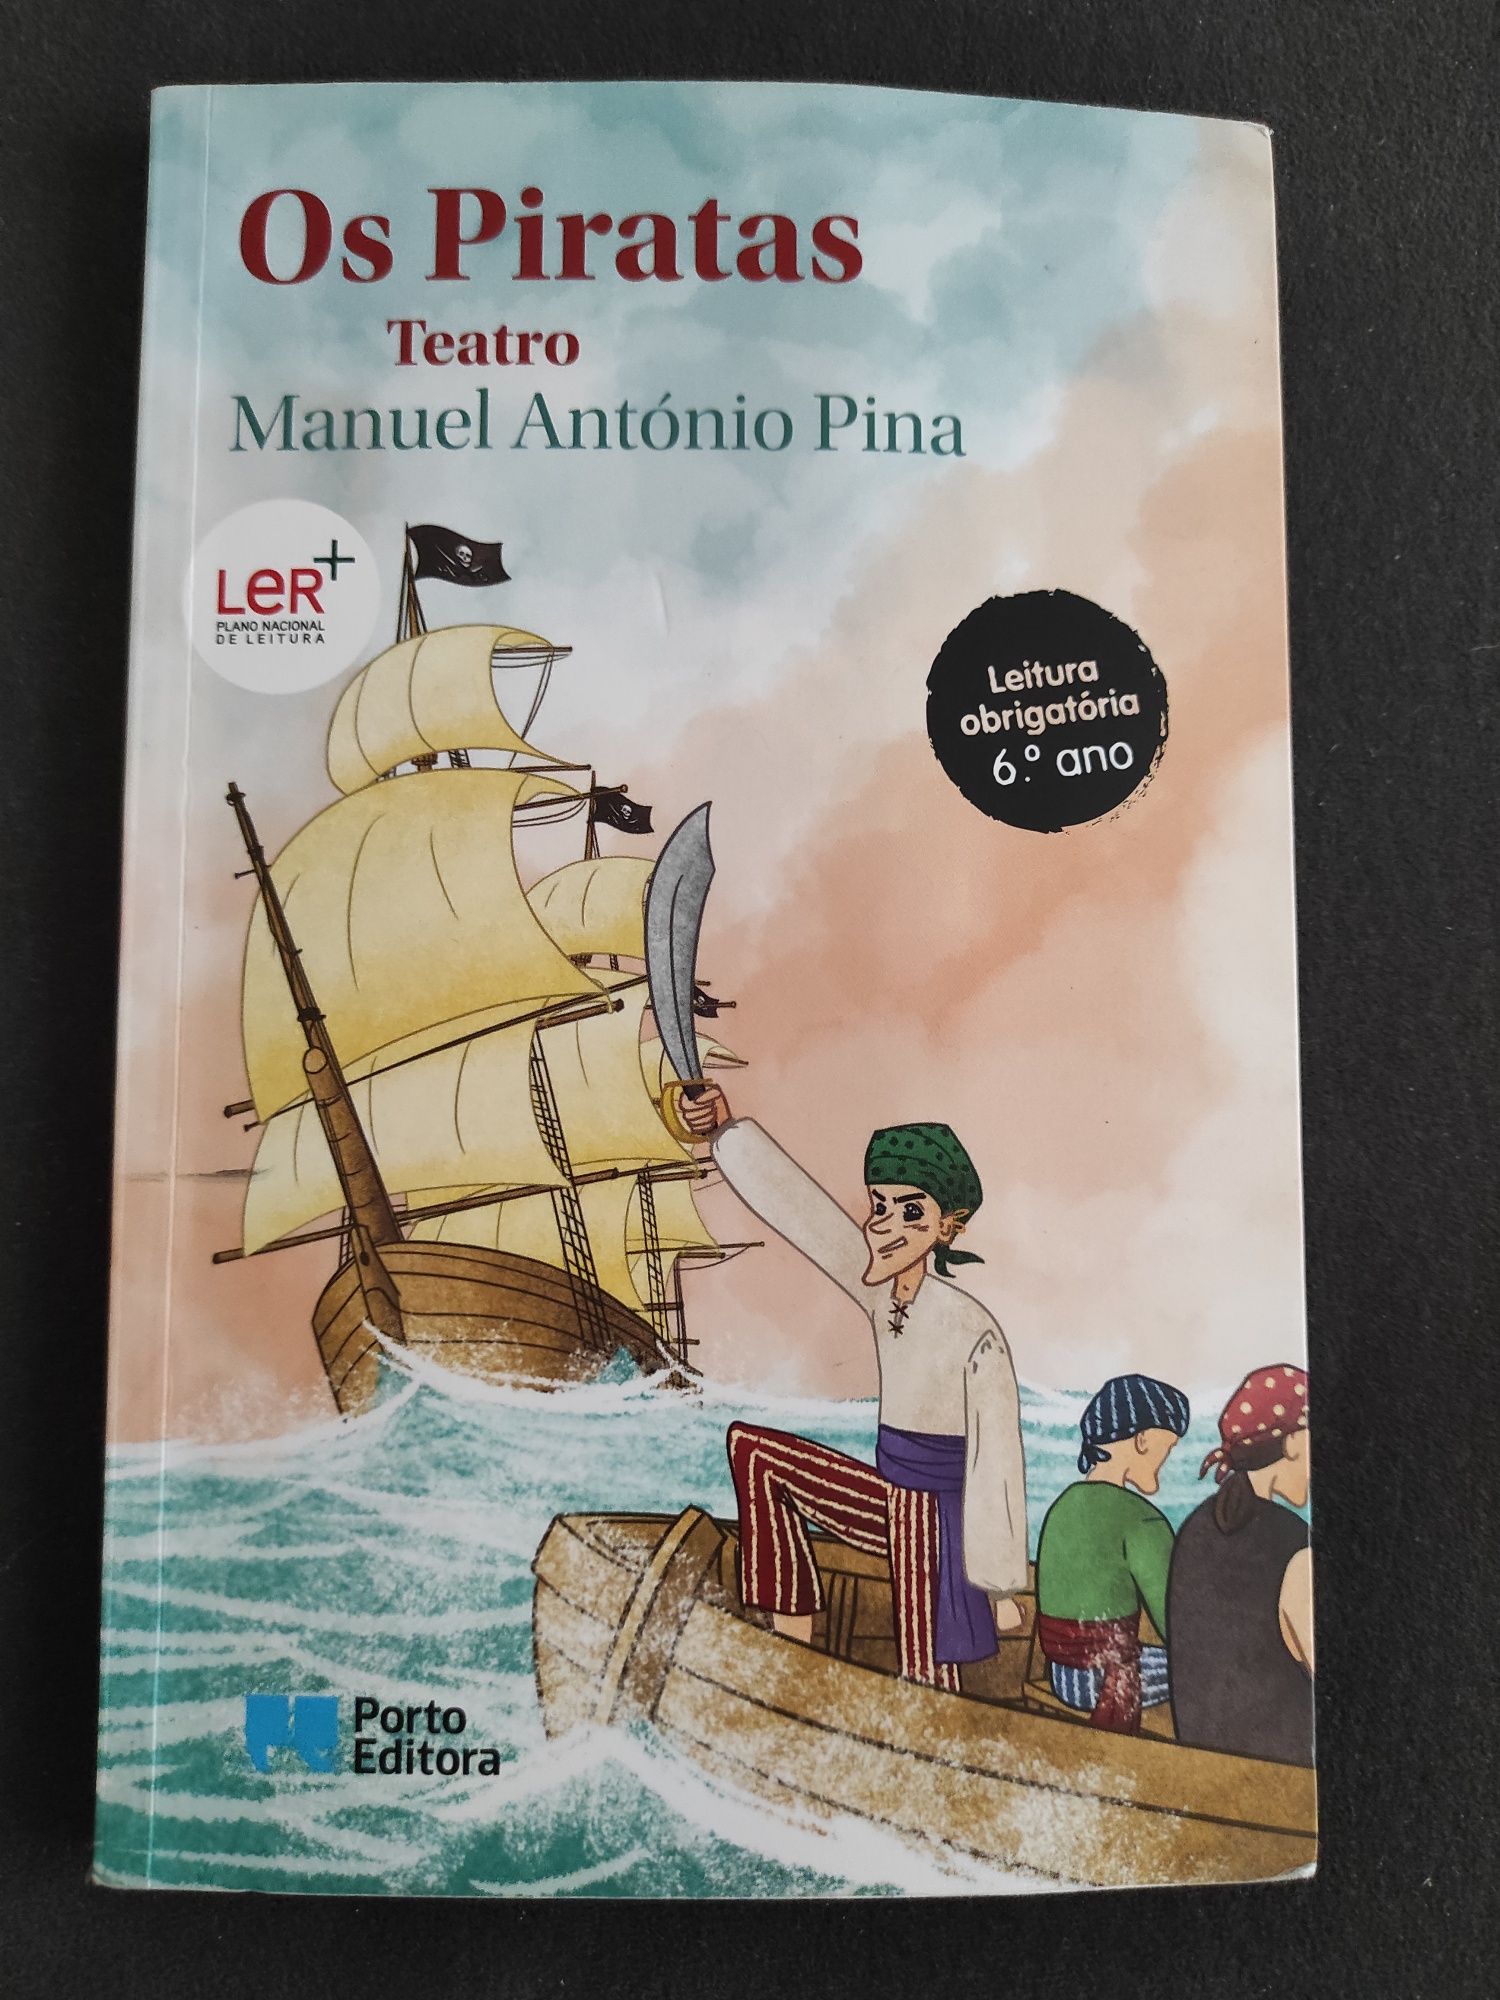 Livro "Os Piratas - Teatro"